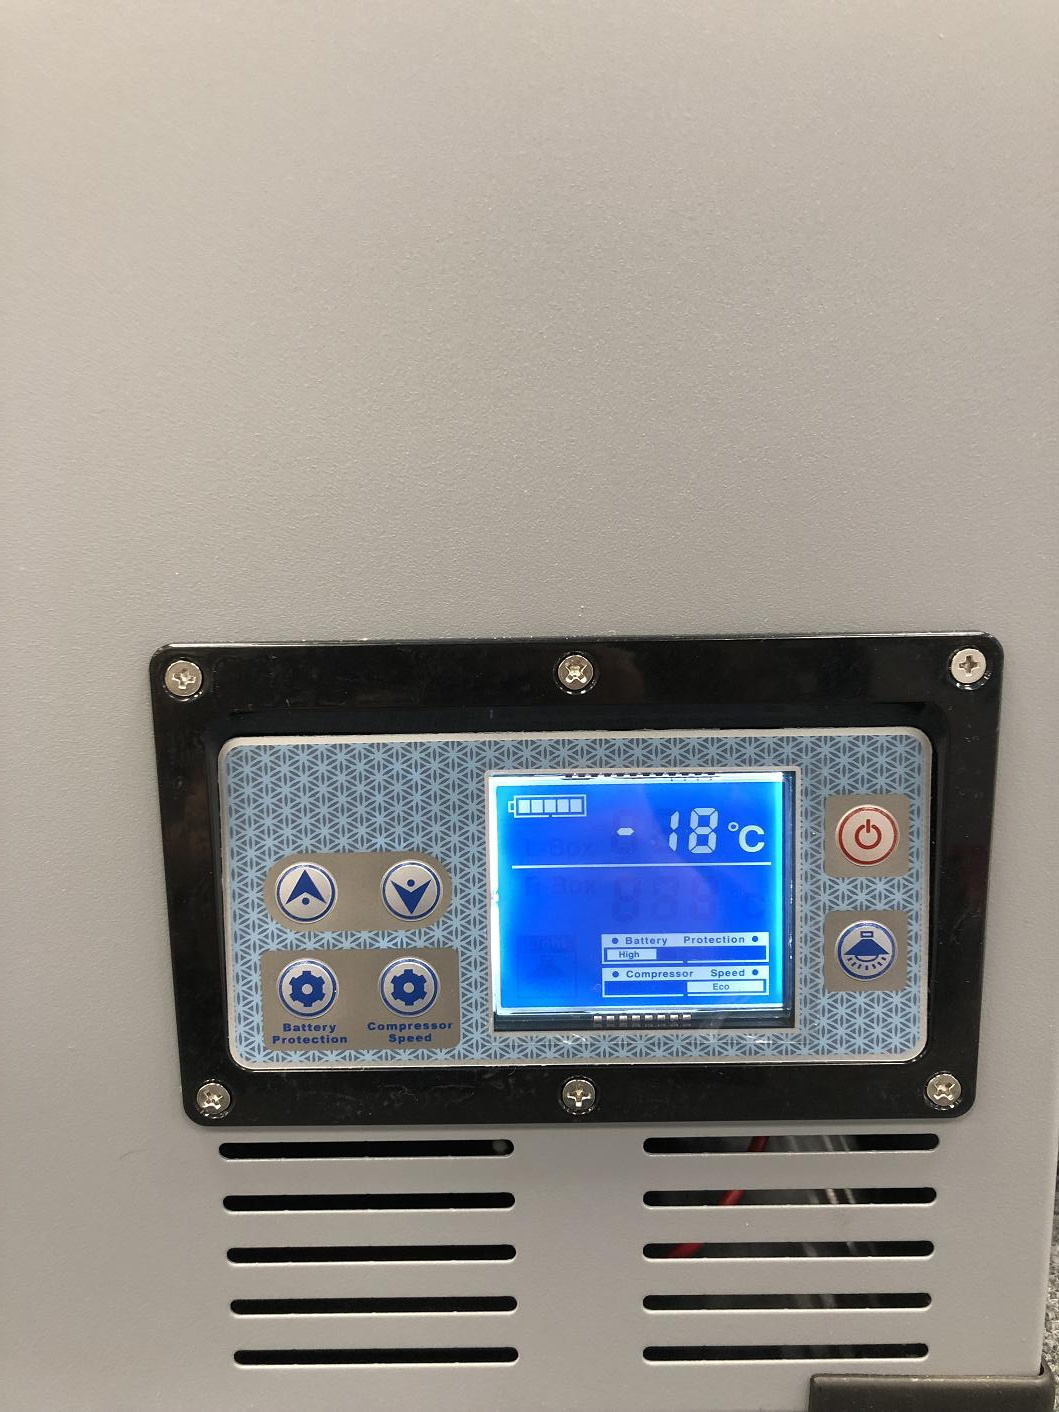 Холодильник компрессорный IC-60